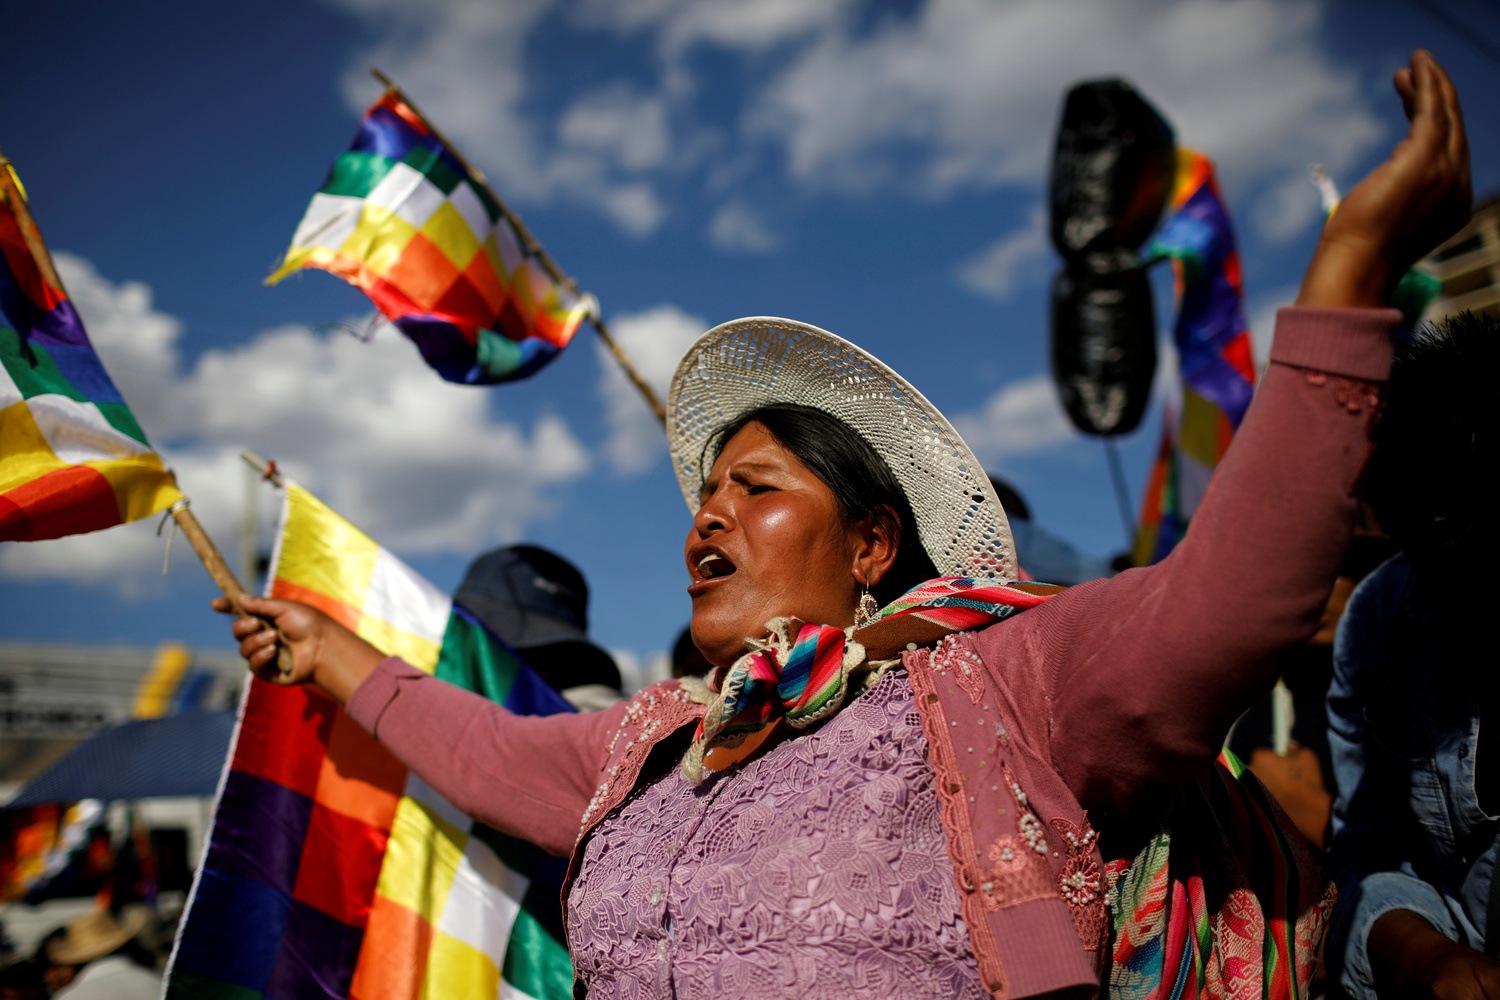 Sostenitori dell'ex Presidente Evo Morales partecipano a una manifestazione a Cochabamba, Bolivia, 18 novembre 2019. REUTERS/Marco Bello